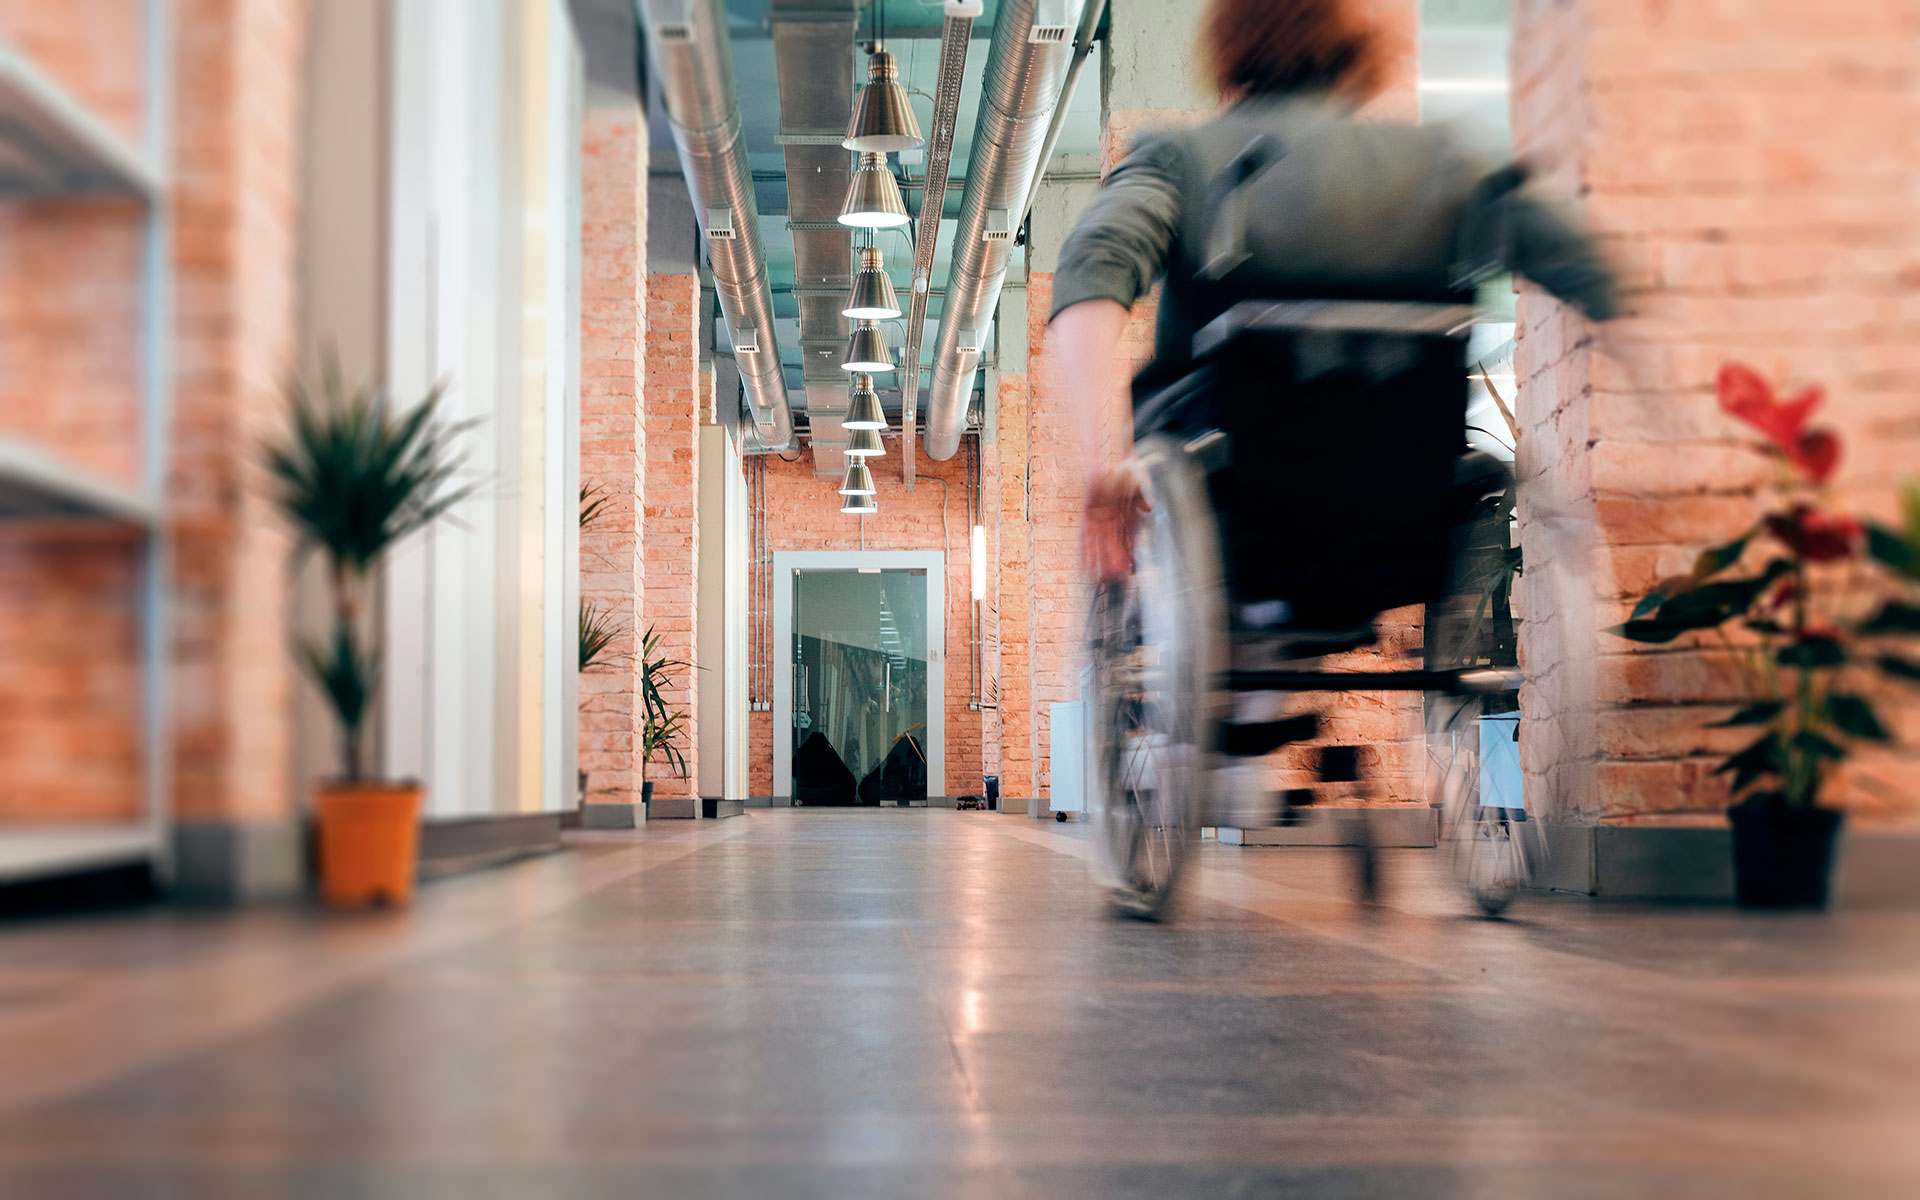 Imagem desfocada (efeito de movimento) de uma pessoa de cadeira de rodas a percorrer um corredor.